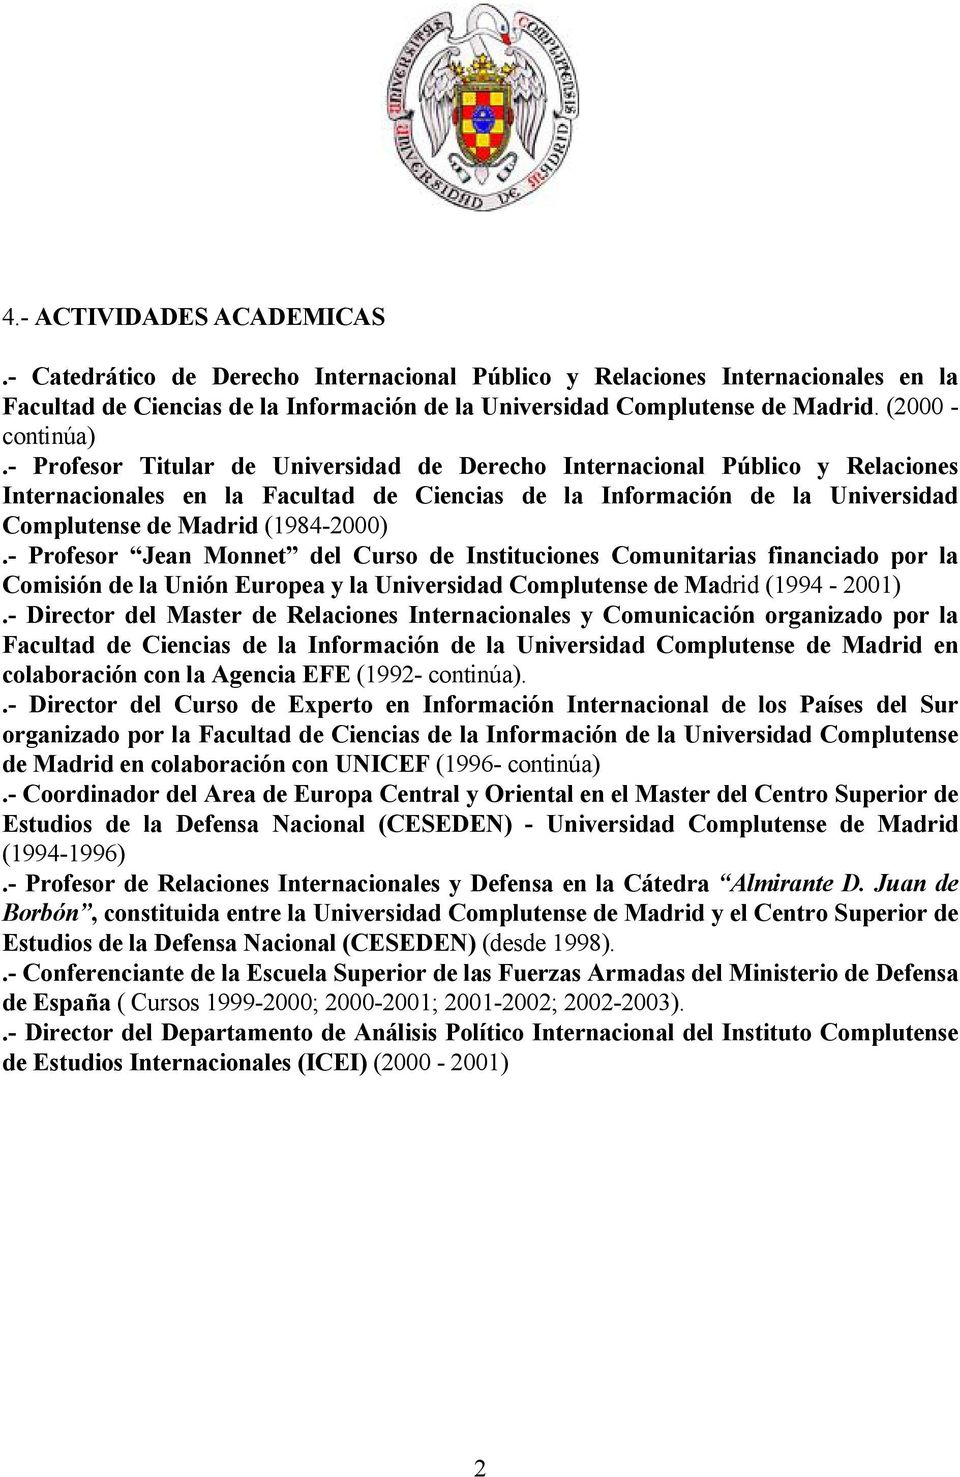 - Profesor Titular de Universidad de Derecho Internacional Público y Relaciones Internacionales en la Facultad de Ciencias de la Información de la Universidad Complutense de Madrid (1984-2000).